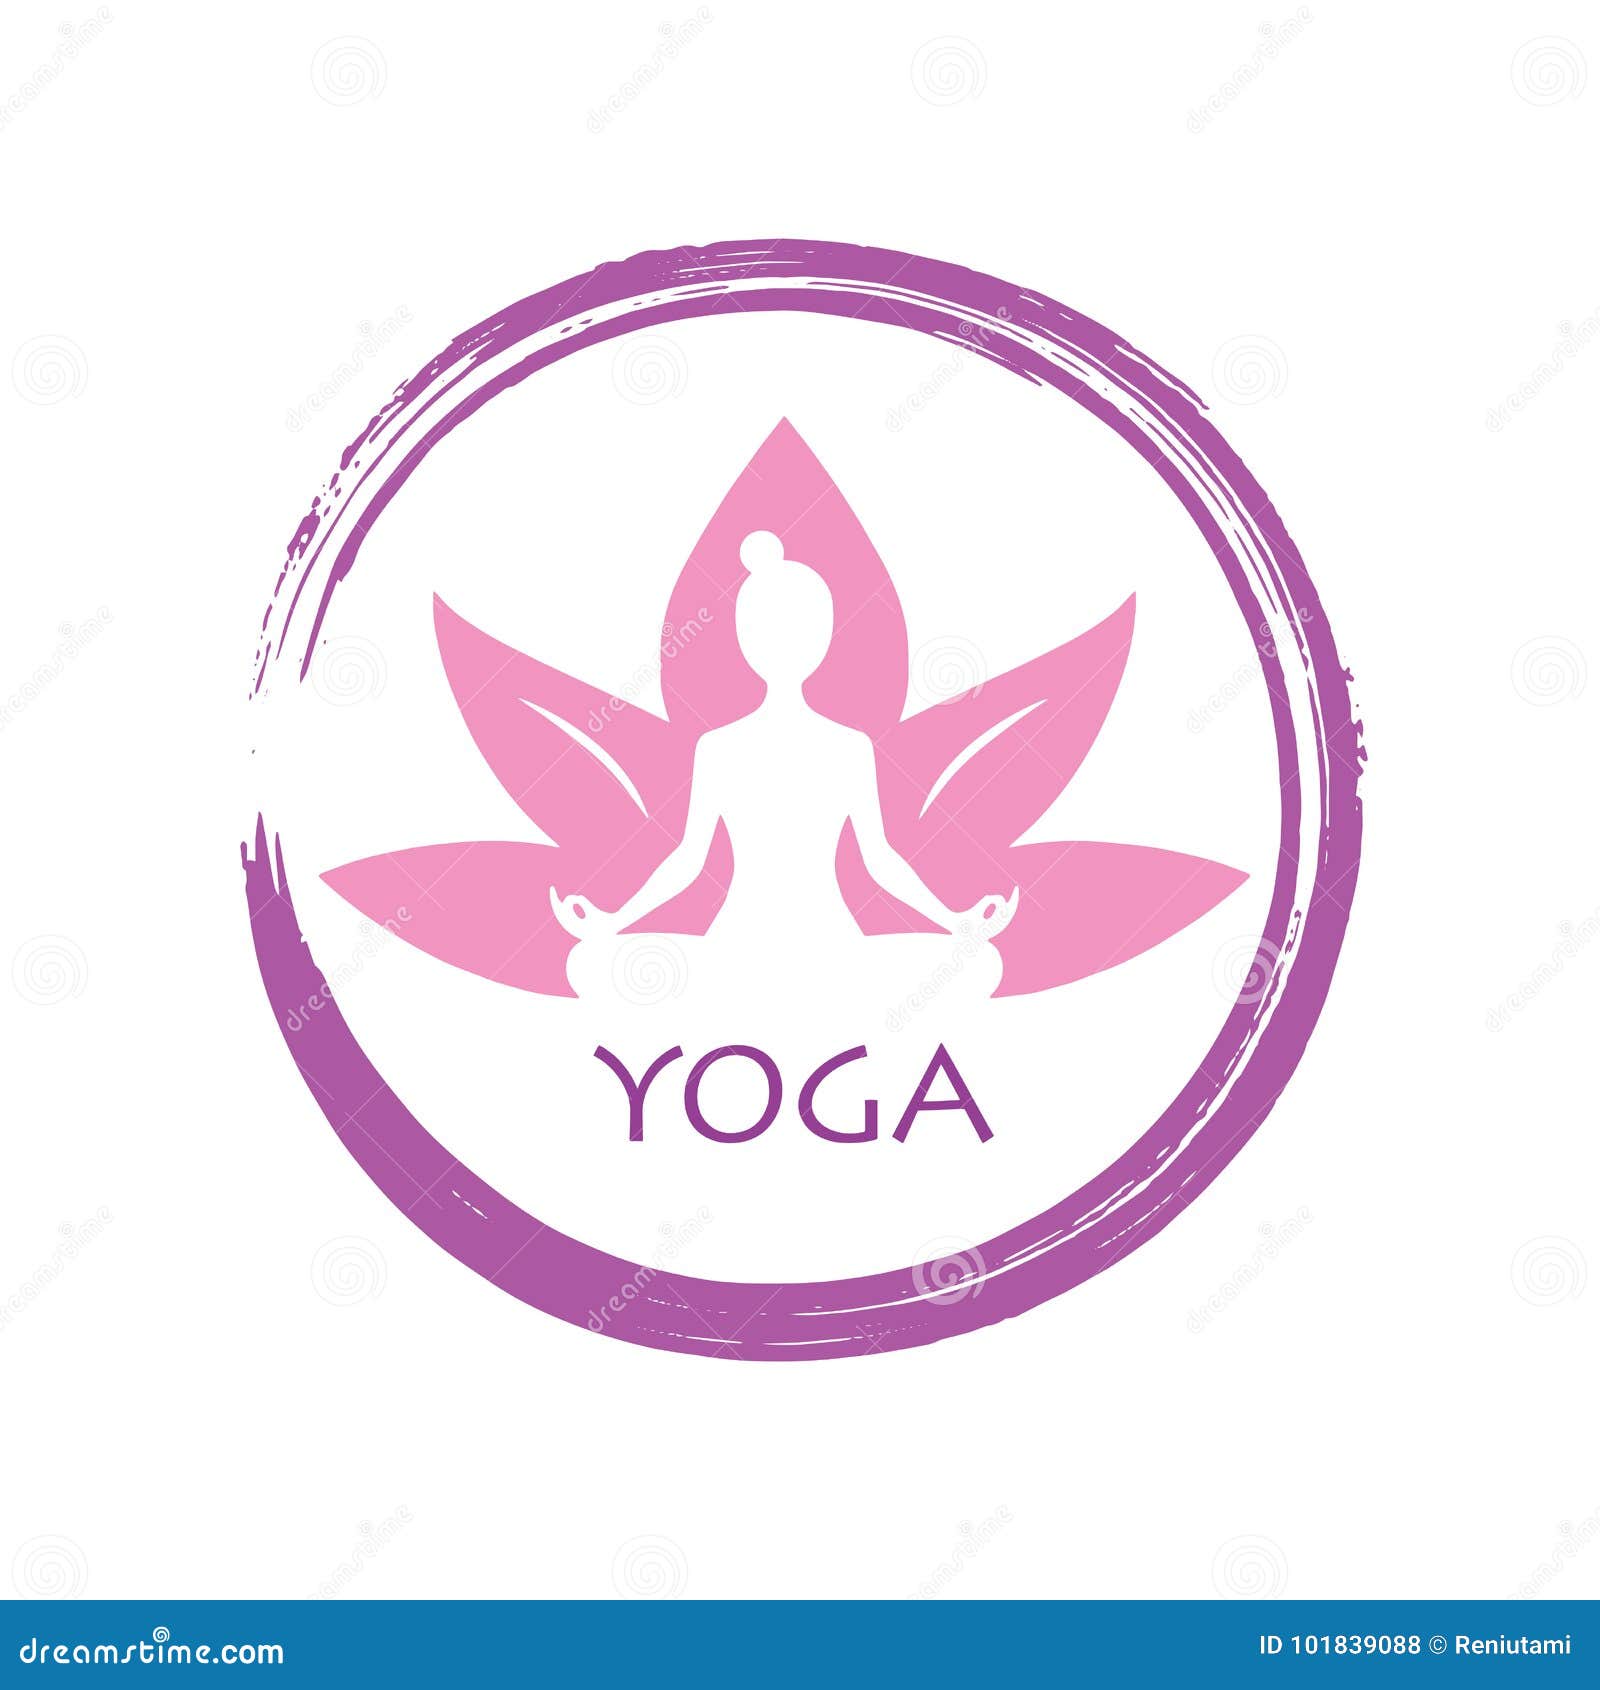 Lotus Yoga Zen Vector Logo Template Design Stock Vector ...